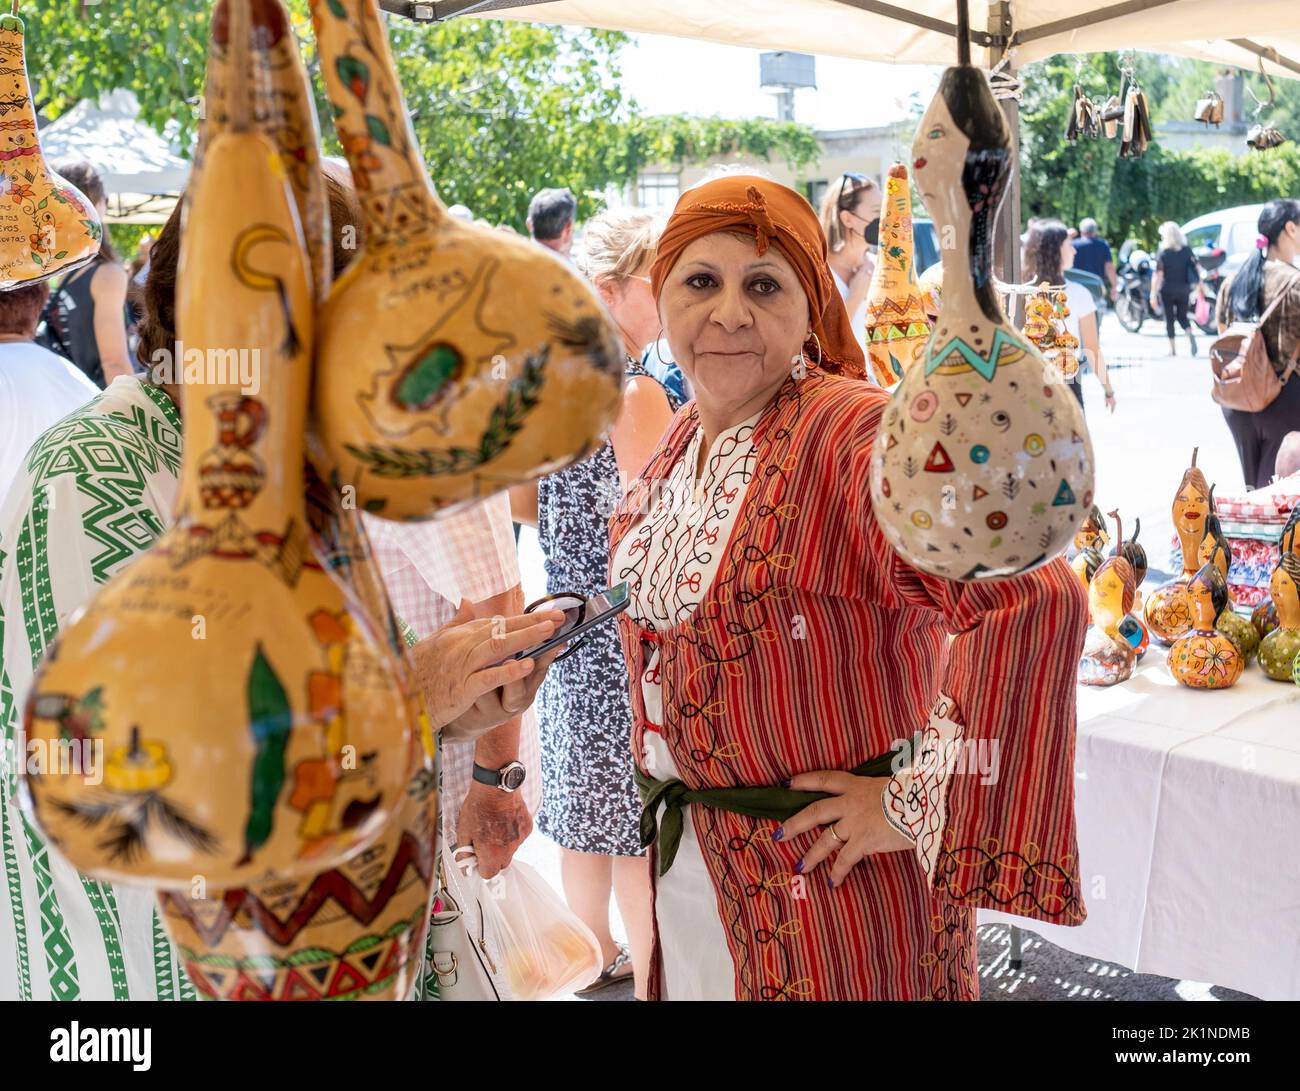 Mujeres chipriotas vestidos de forma tradicional en el Festival Rural de Statos-Ayios Fotios, República de Chipre. Foto de stock